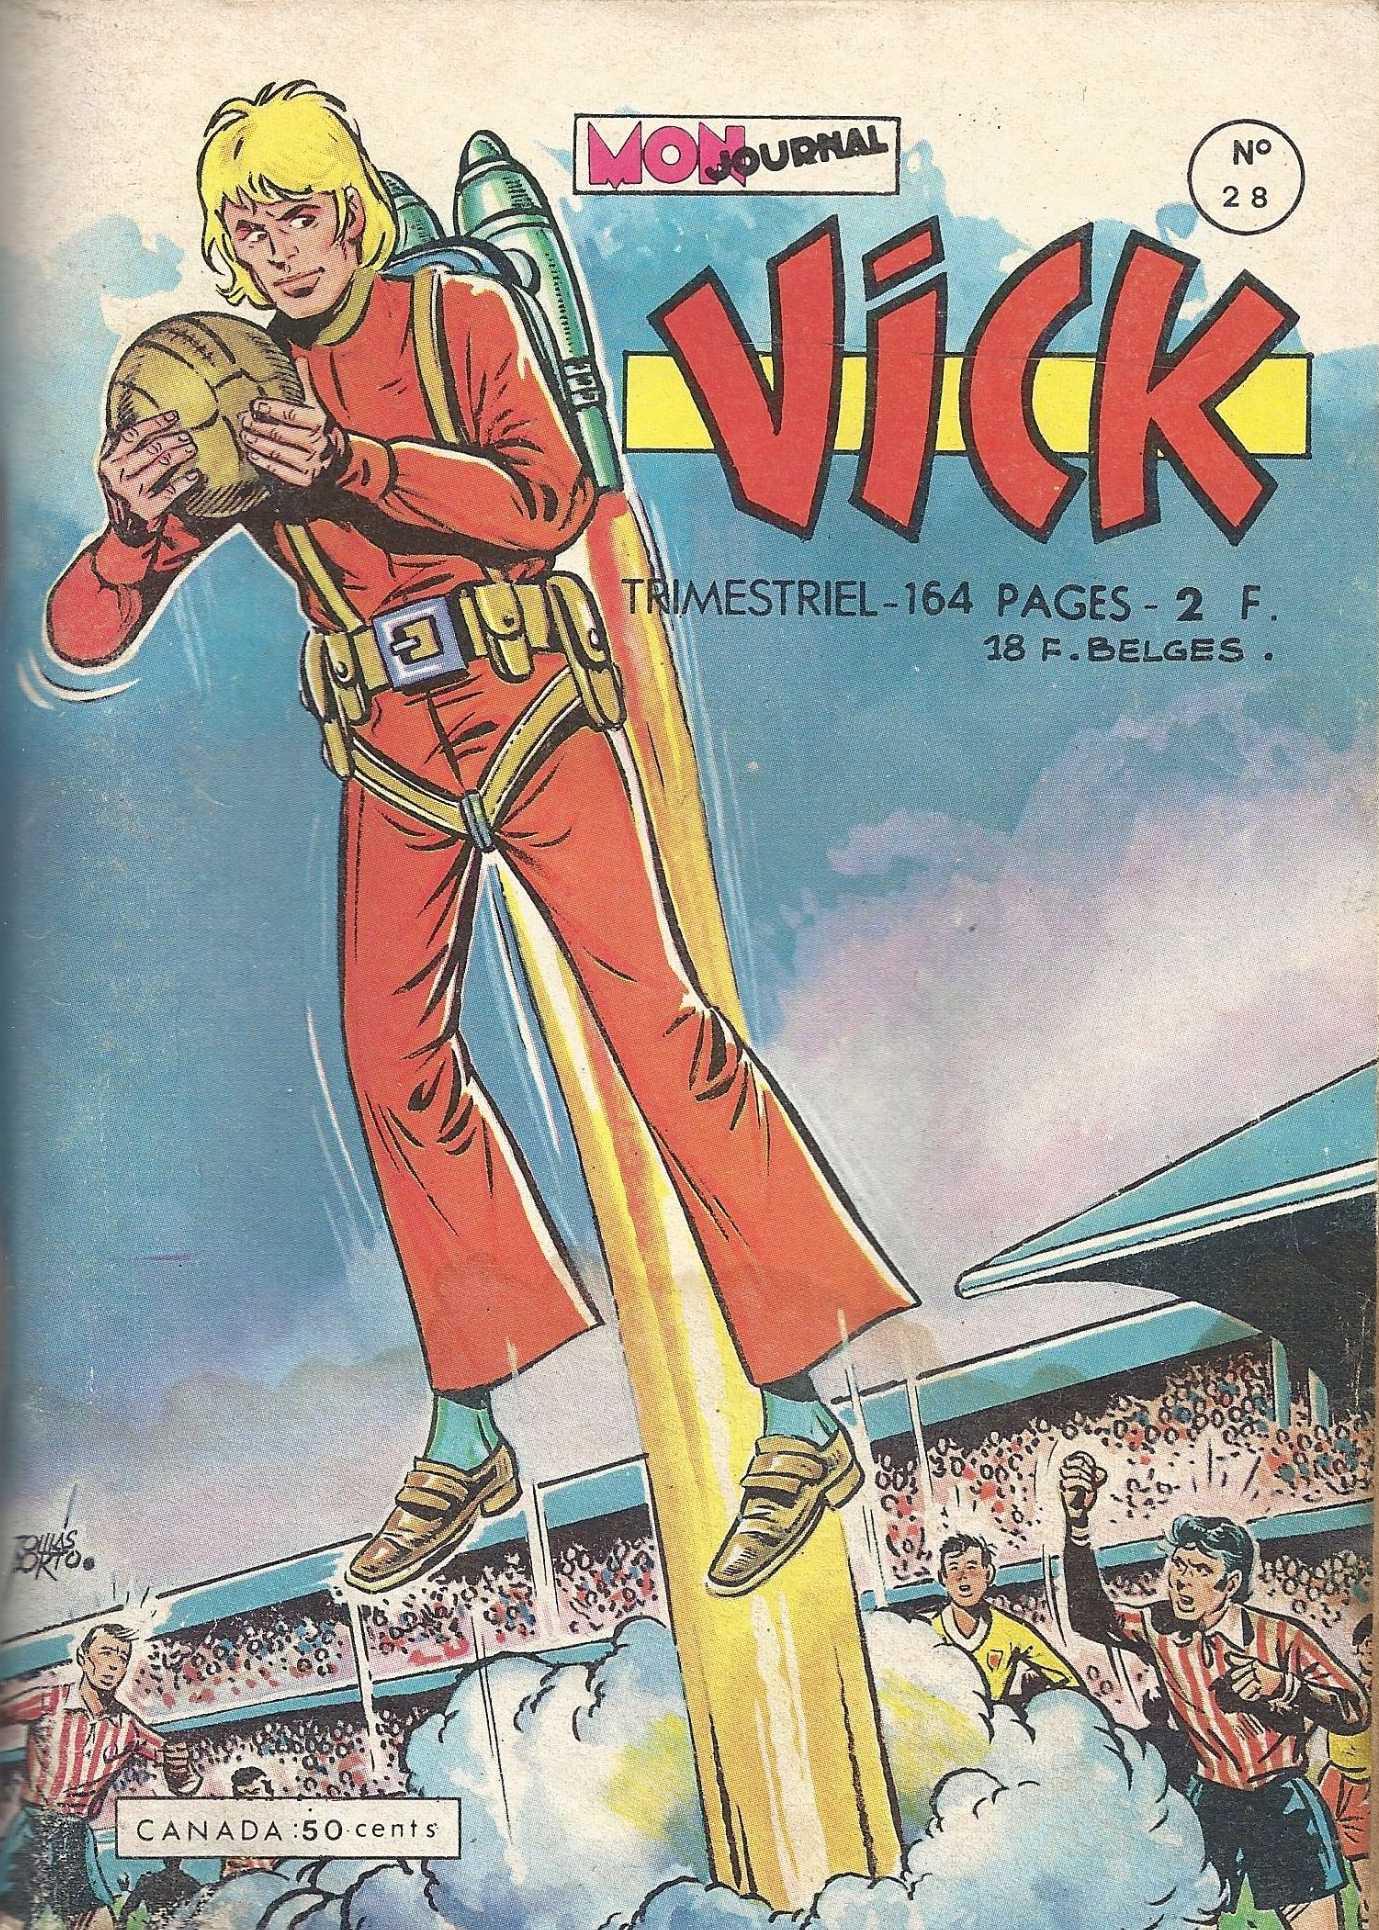 Pf contenant Astroman dans la série Vick